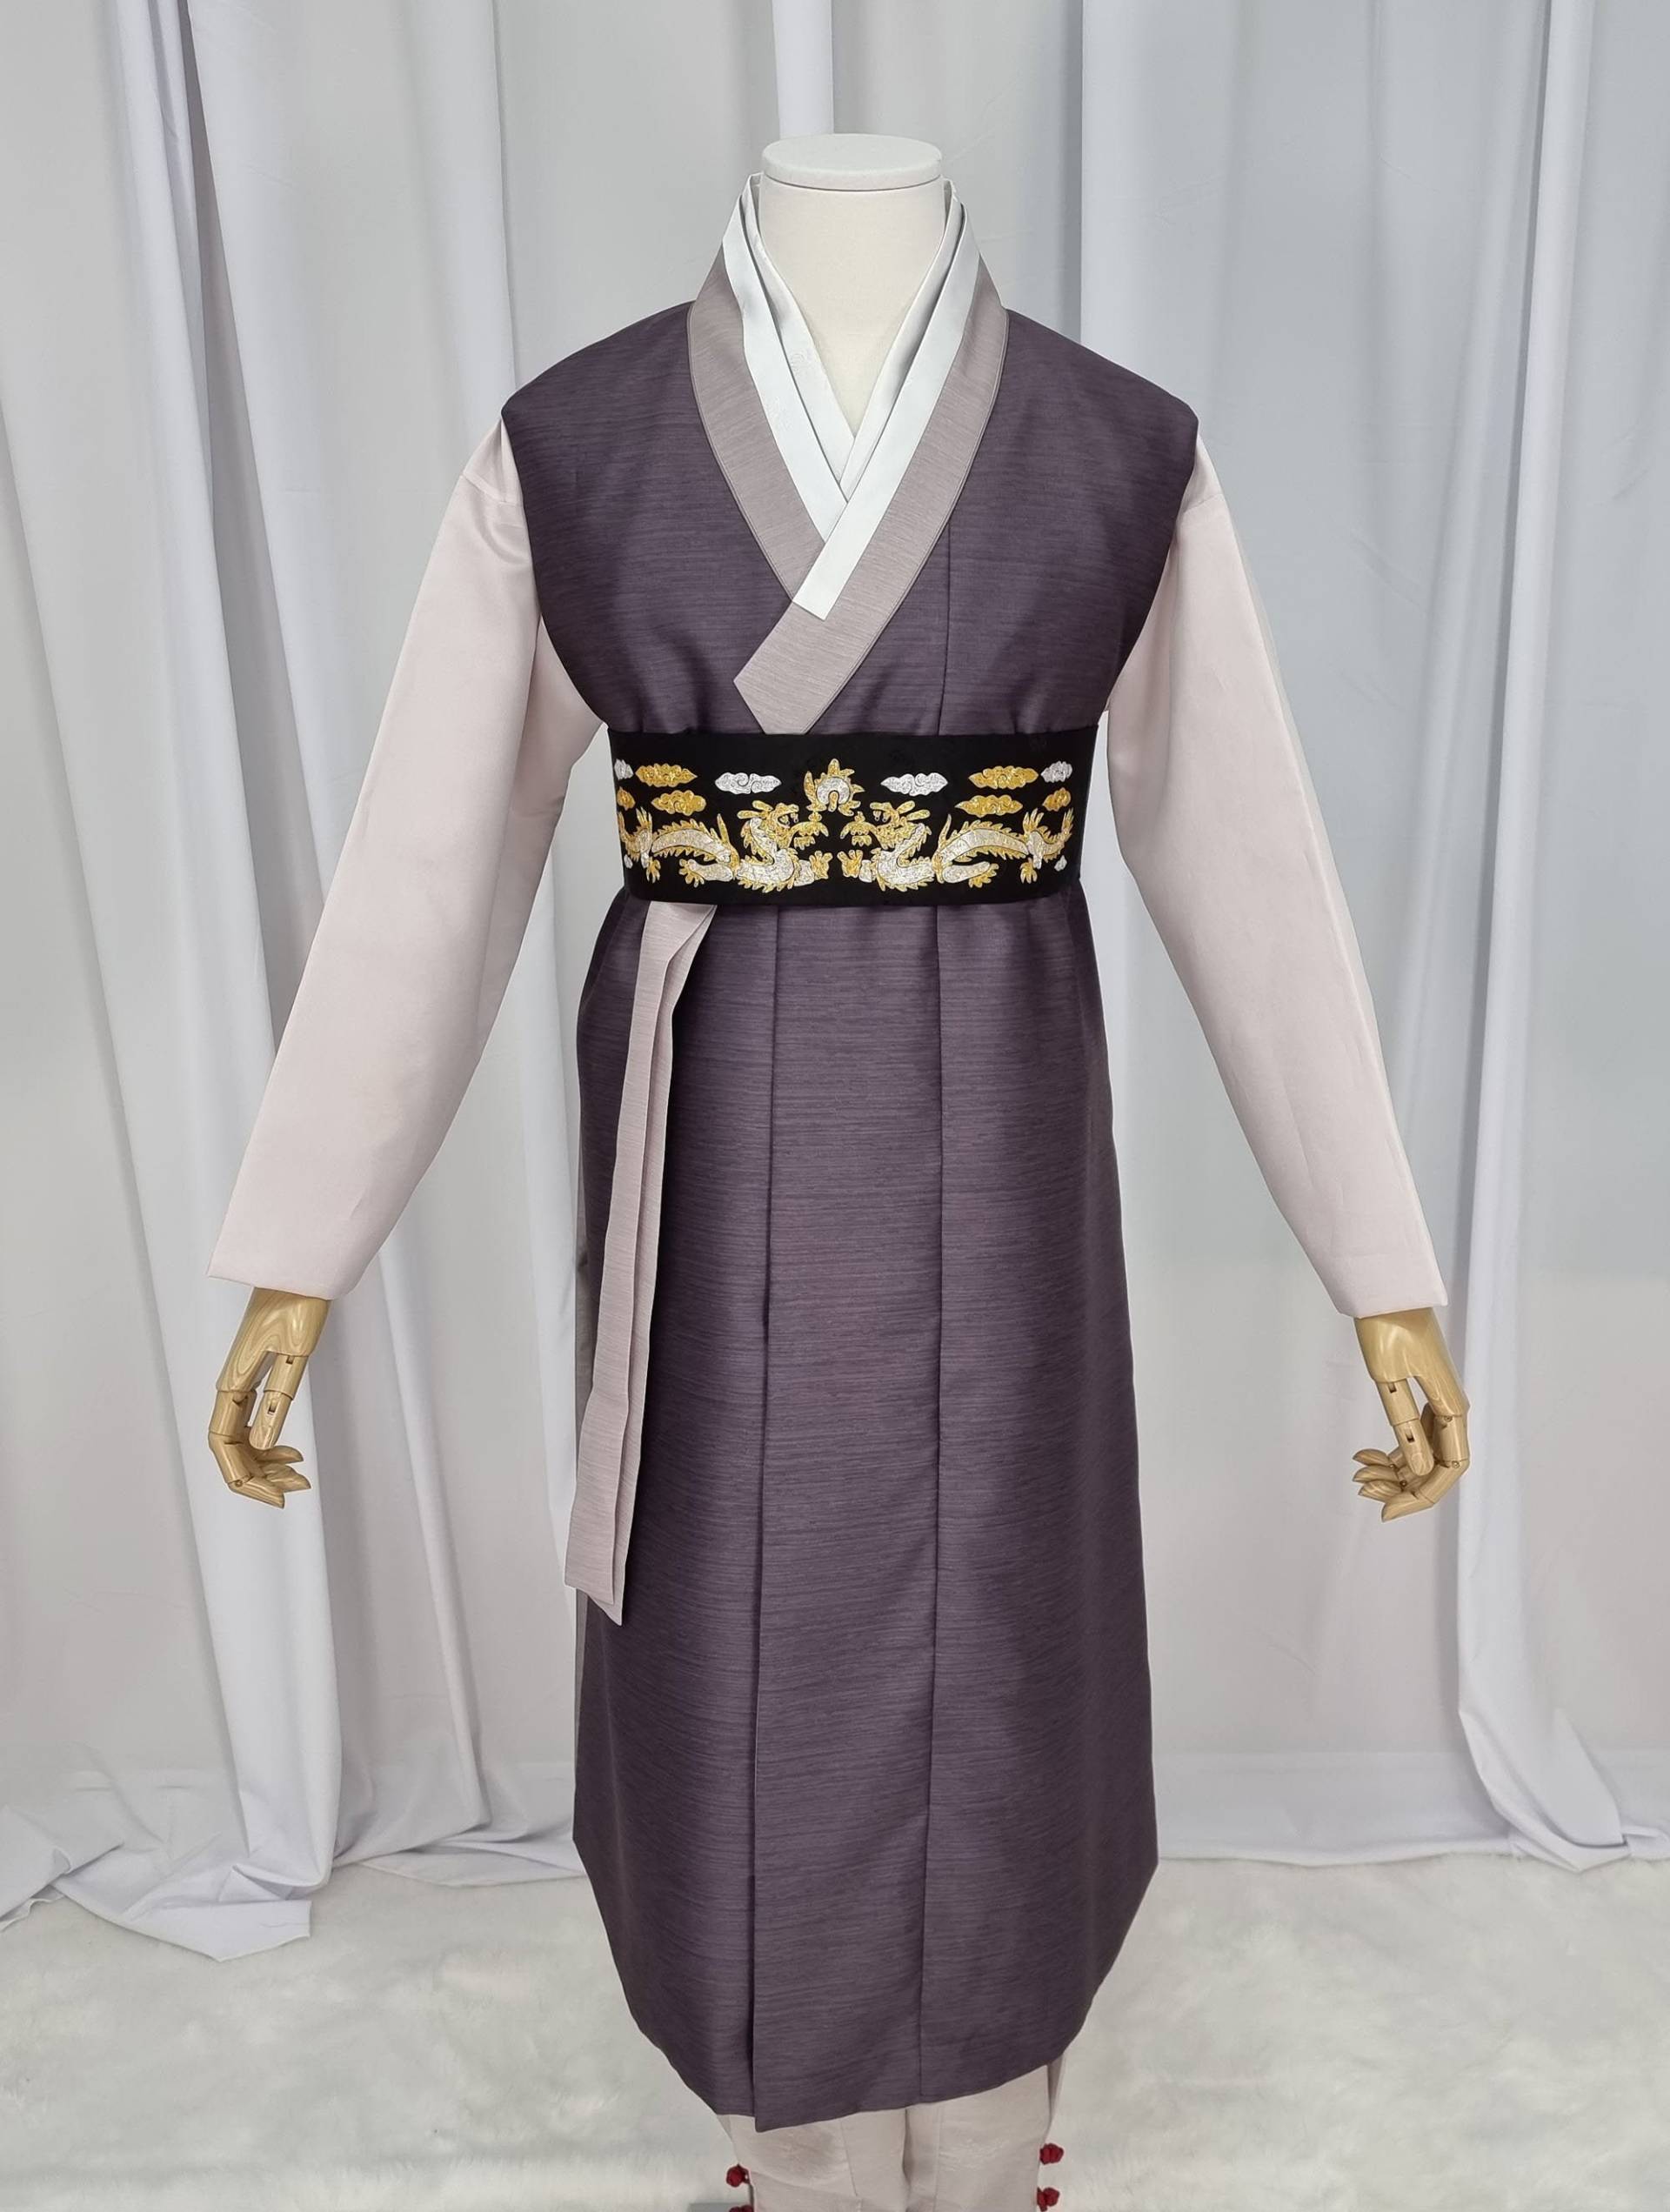 Mann Hanbok Male Korea Traditionelle Kleidung Set Hochzeitszeremonie Geburtstag Maßanfertigung Mh028 von bellahanbok